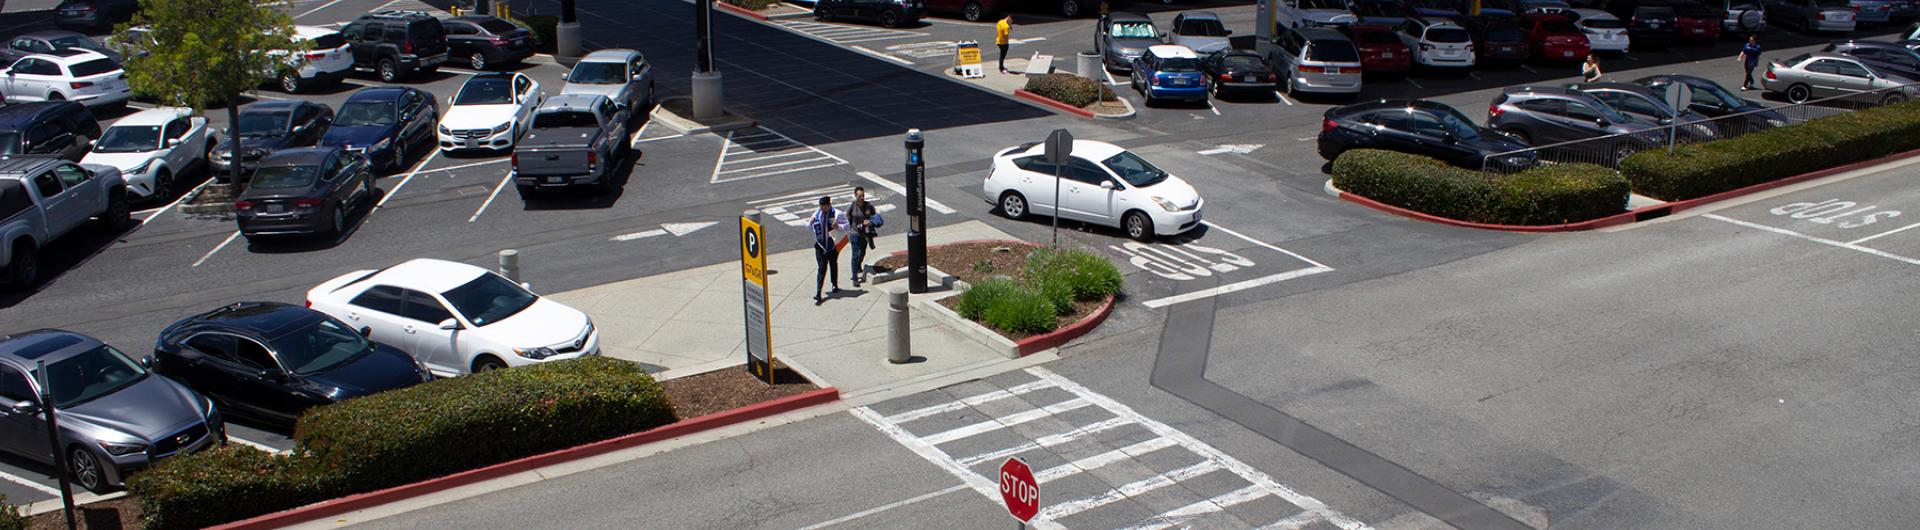 Parking lot individuals in crosswalk